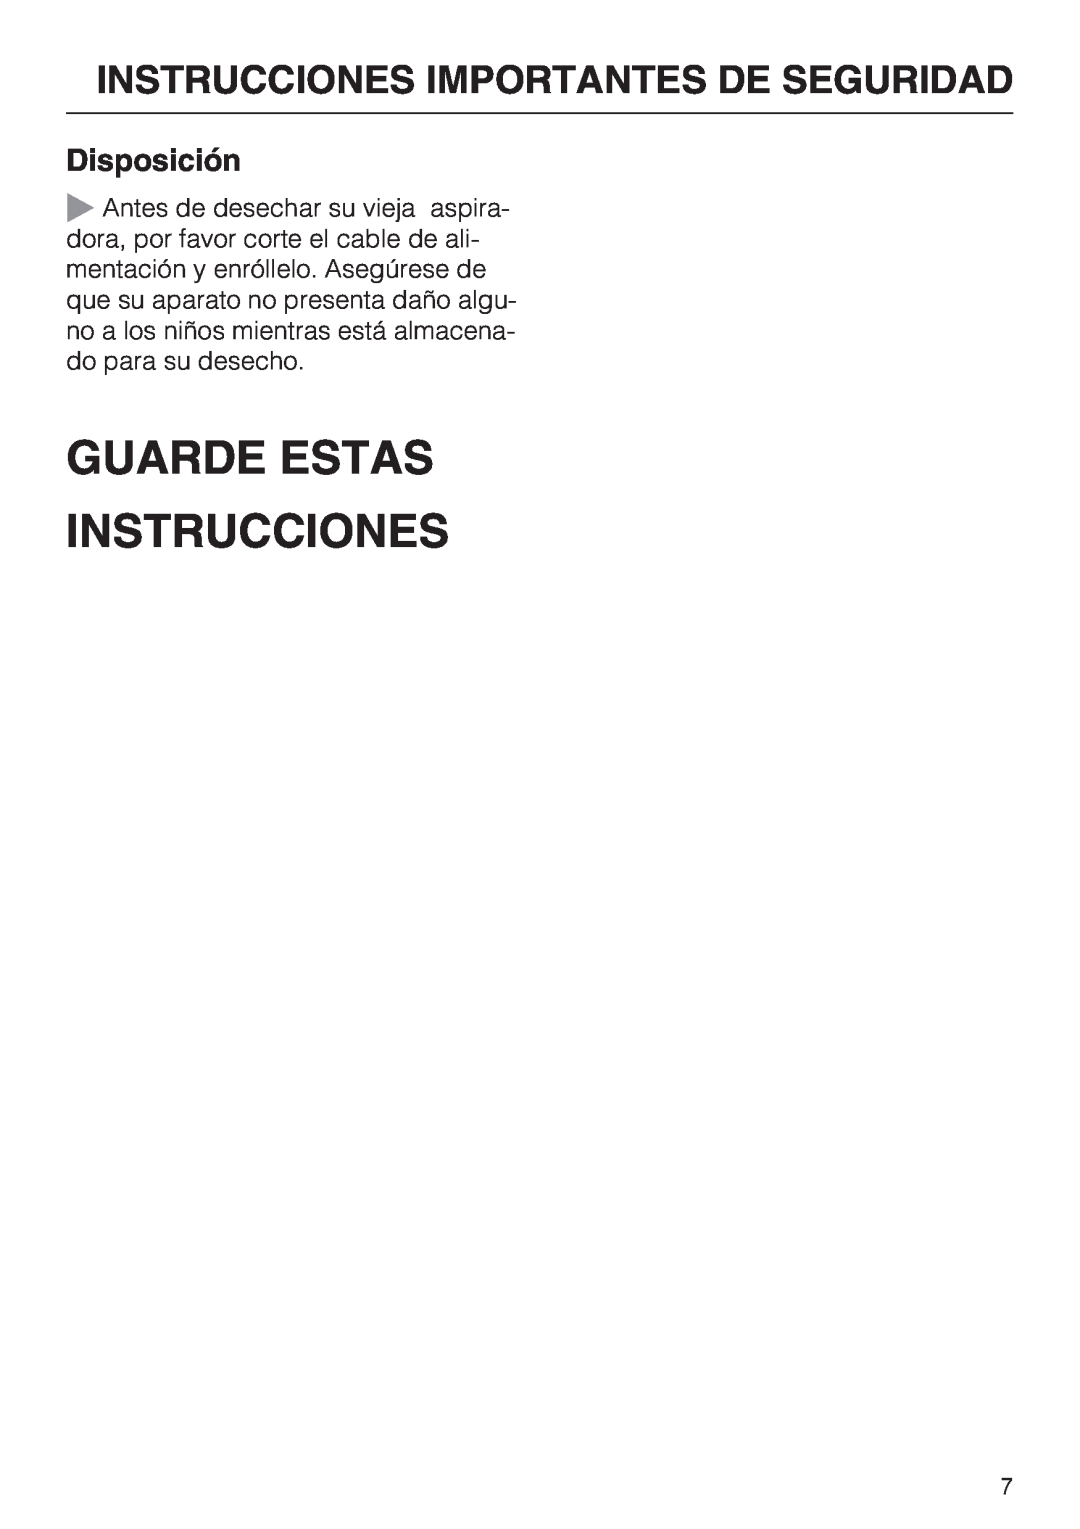 Miele S 2001 manual Guarde Estas Instrucciones, Disposición, Instrucciones Importantes De Seguridad 